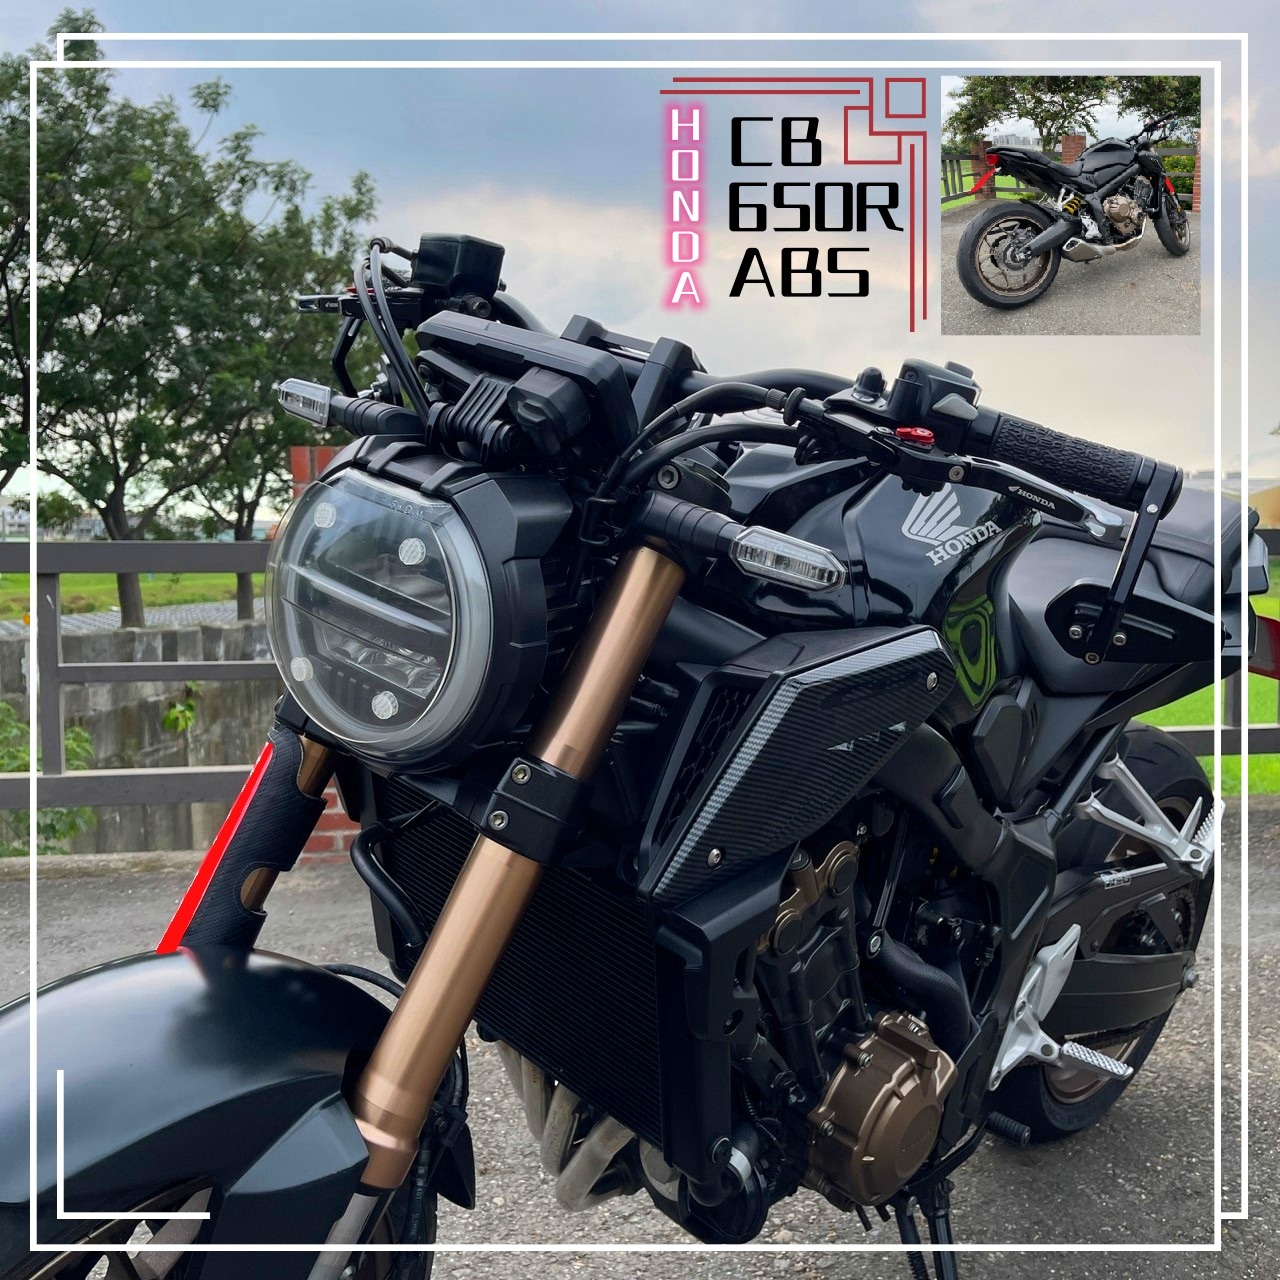 【飛翔國際】HONDA CB650R - 「Webike-摩托車市」 2019年 HONDA 本田 CB650R ABS 紅牌